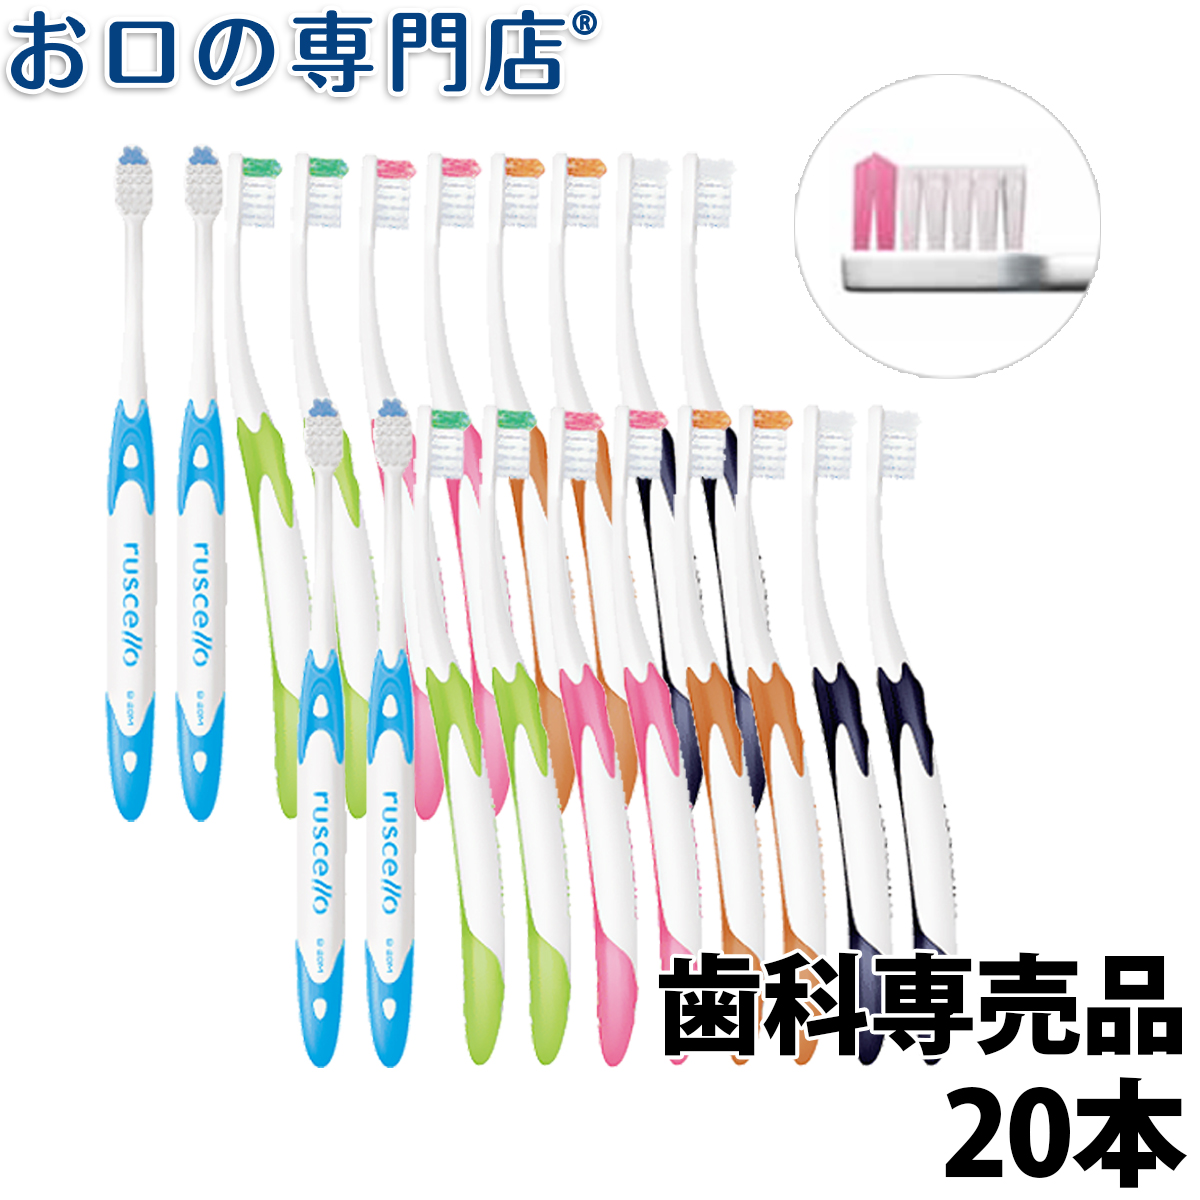 ルシェロB-20(ピセラ)歯ブラシ 20本入ハブラシ／歯ブラシ 歯科専売品